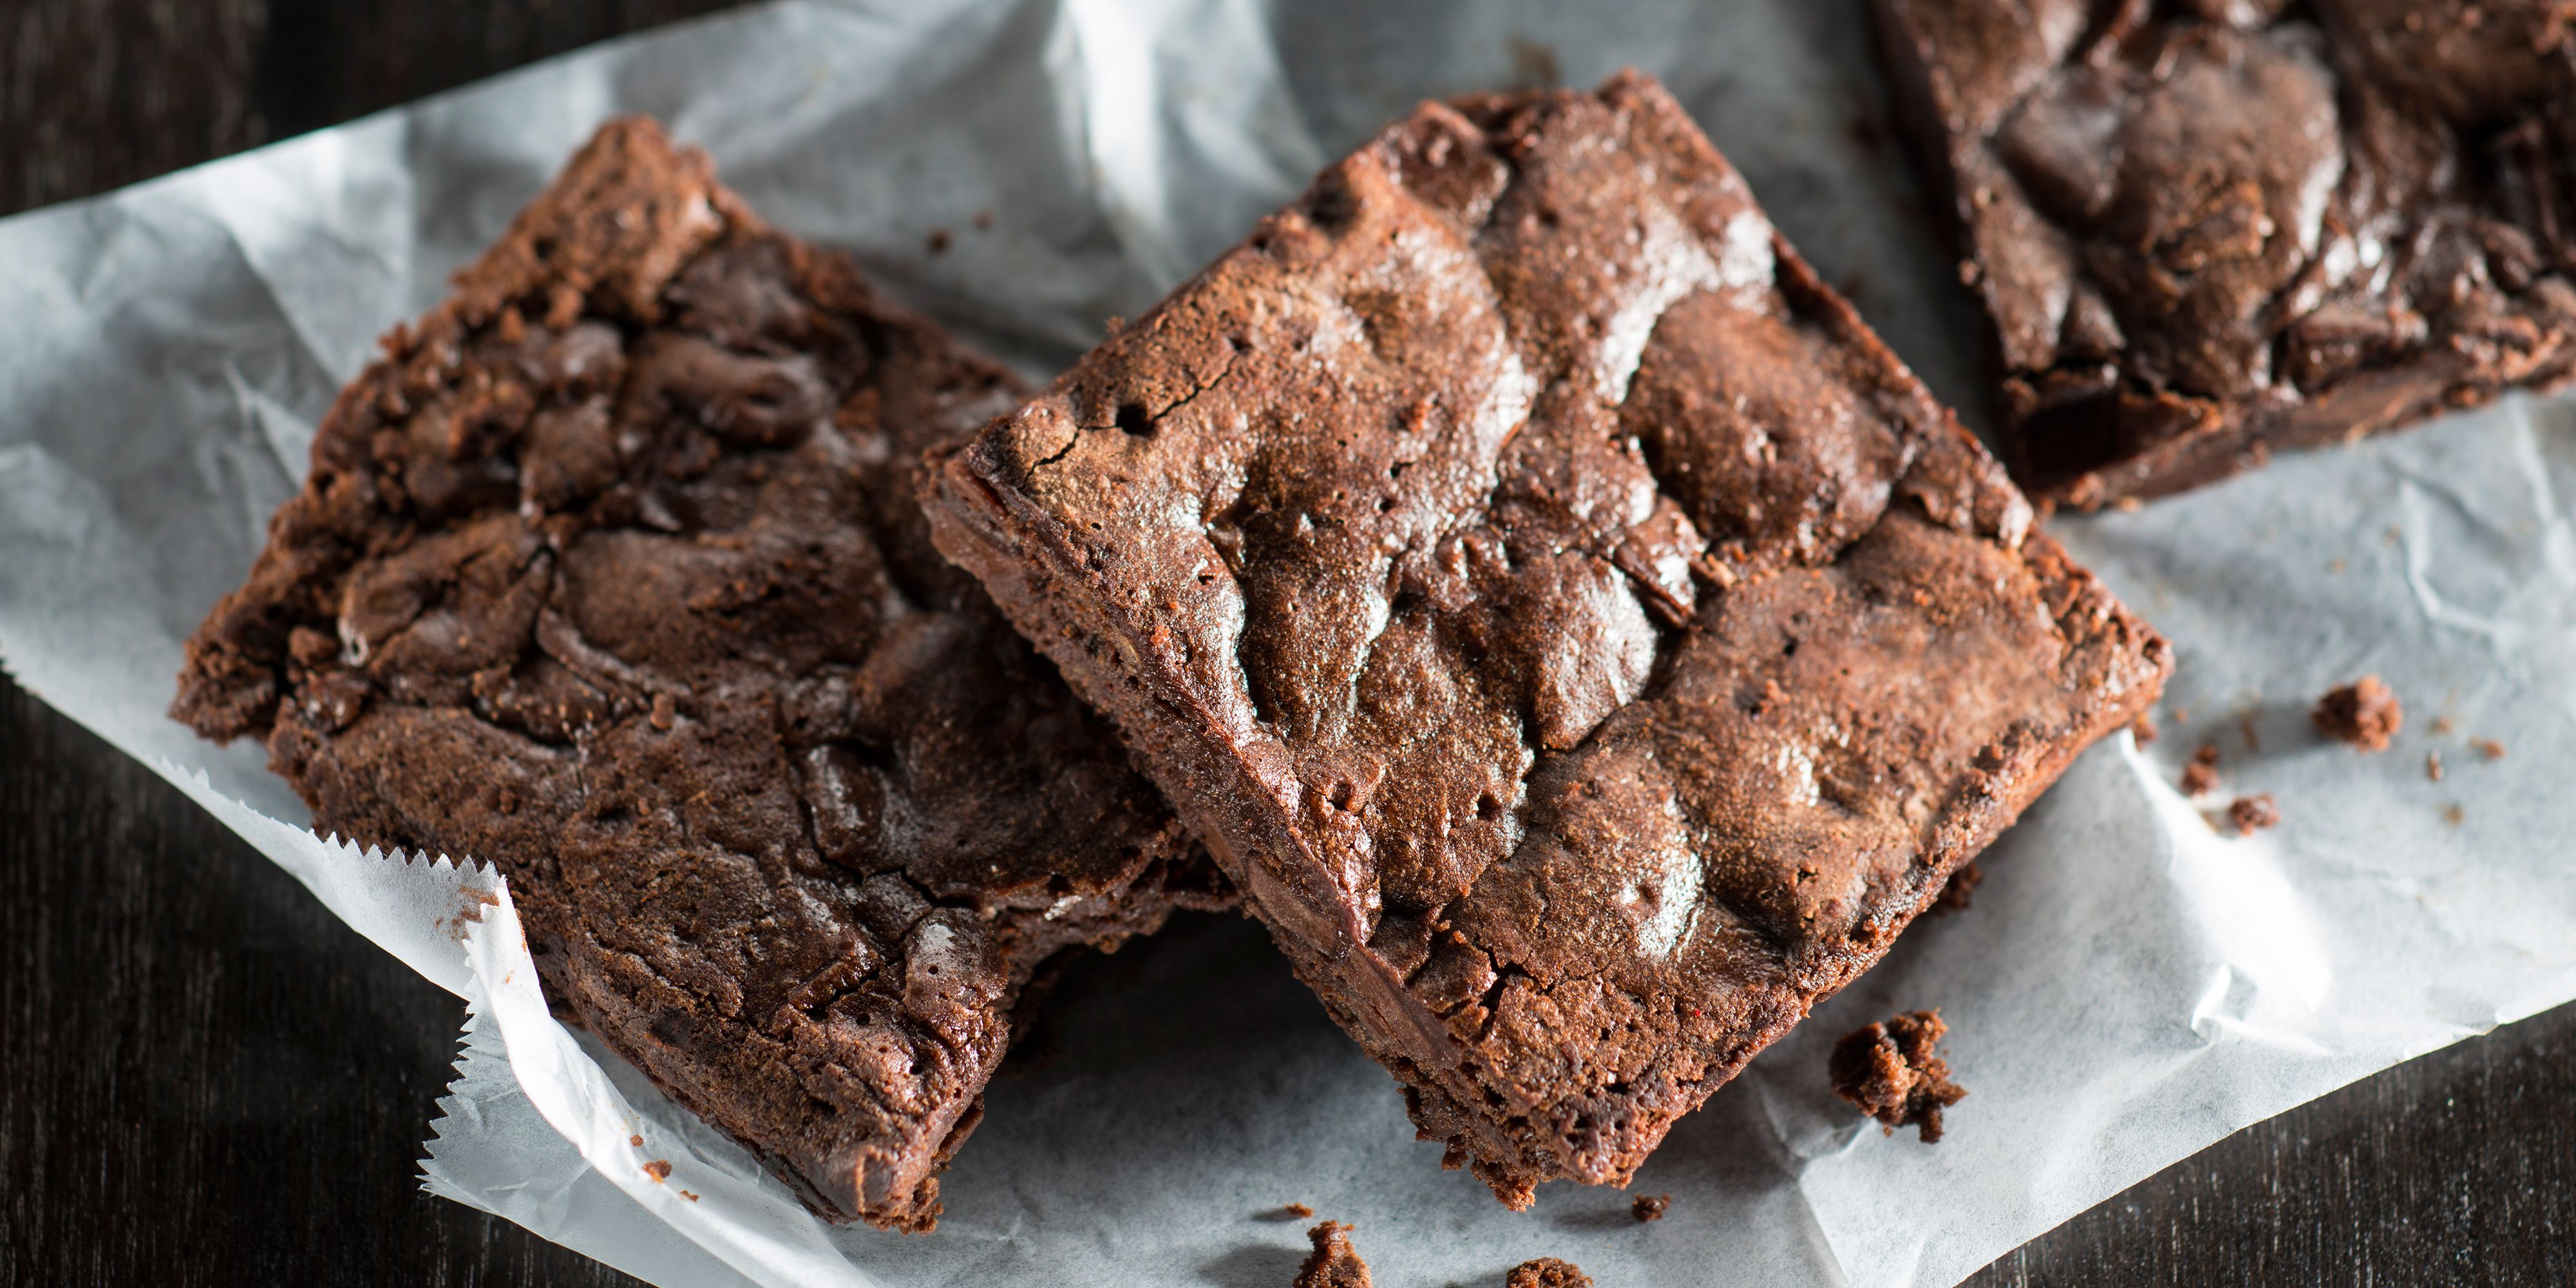 Receta: cómo hacer el brownie perfecto - Video de la receta fácil de brownie